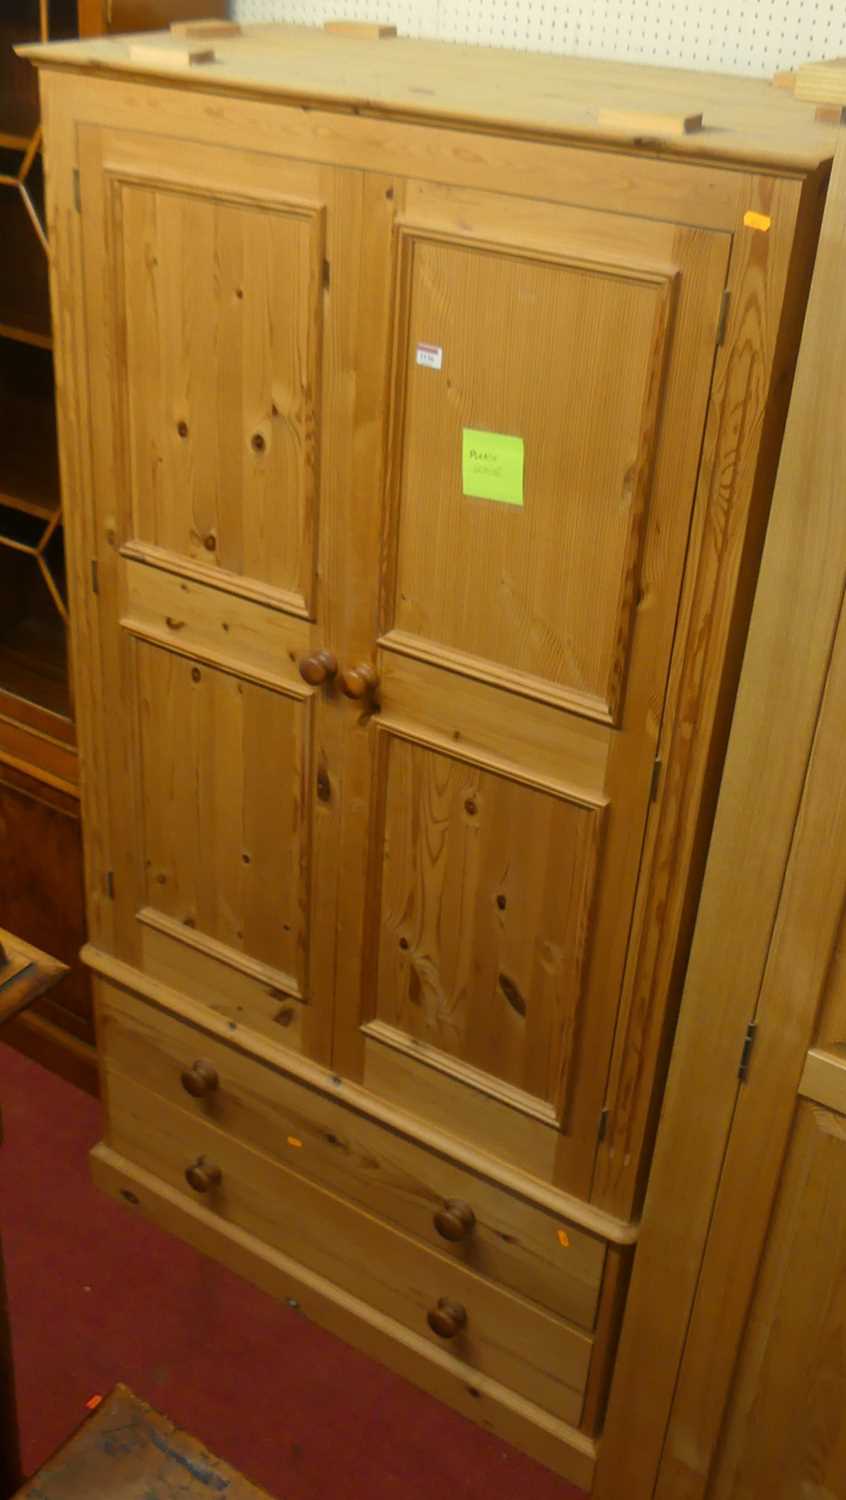 A modern pine double door wardrobe, having twin long lower drawers, width 100cm